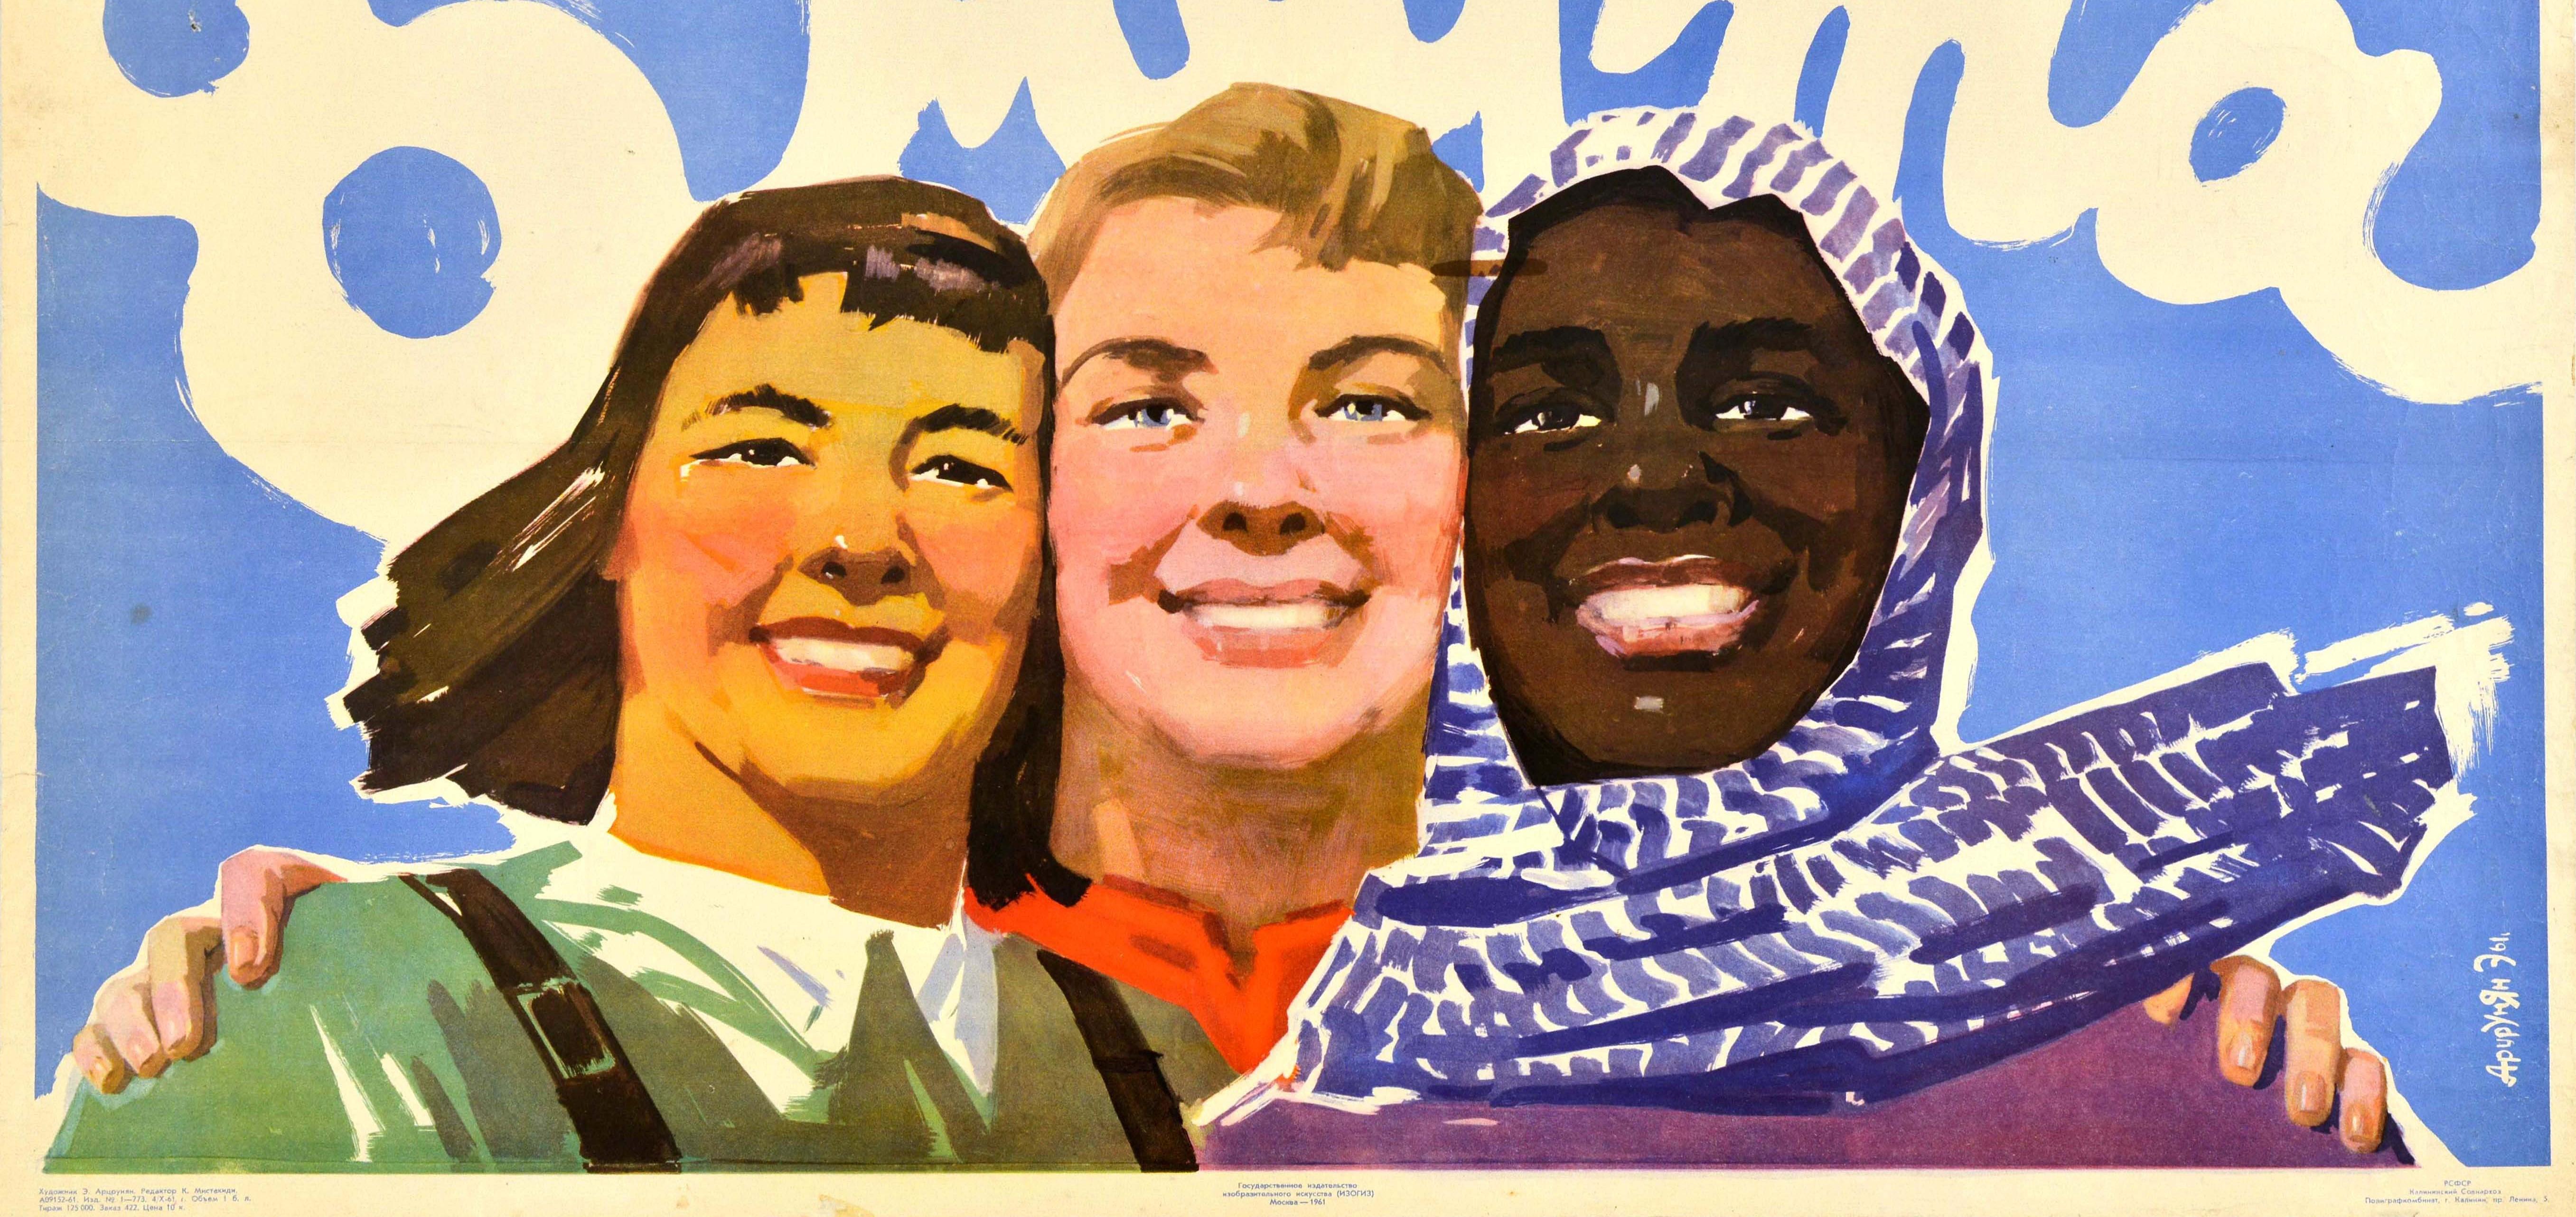 Originales sowjetisches Propagandaplakat für die Feierlichkeiten zum Internationalen Frauentag - 8 ????? / 8. März - zeigt drei Frauen, die den Betrachter anlächeln und das Datum vor einem Hintergrund mit blauem Himmel. Der Internationale Frauentag